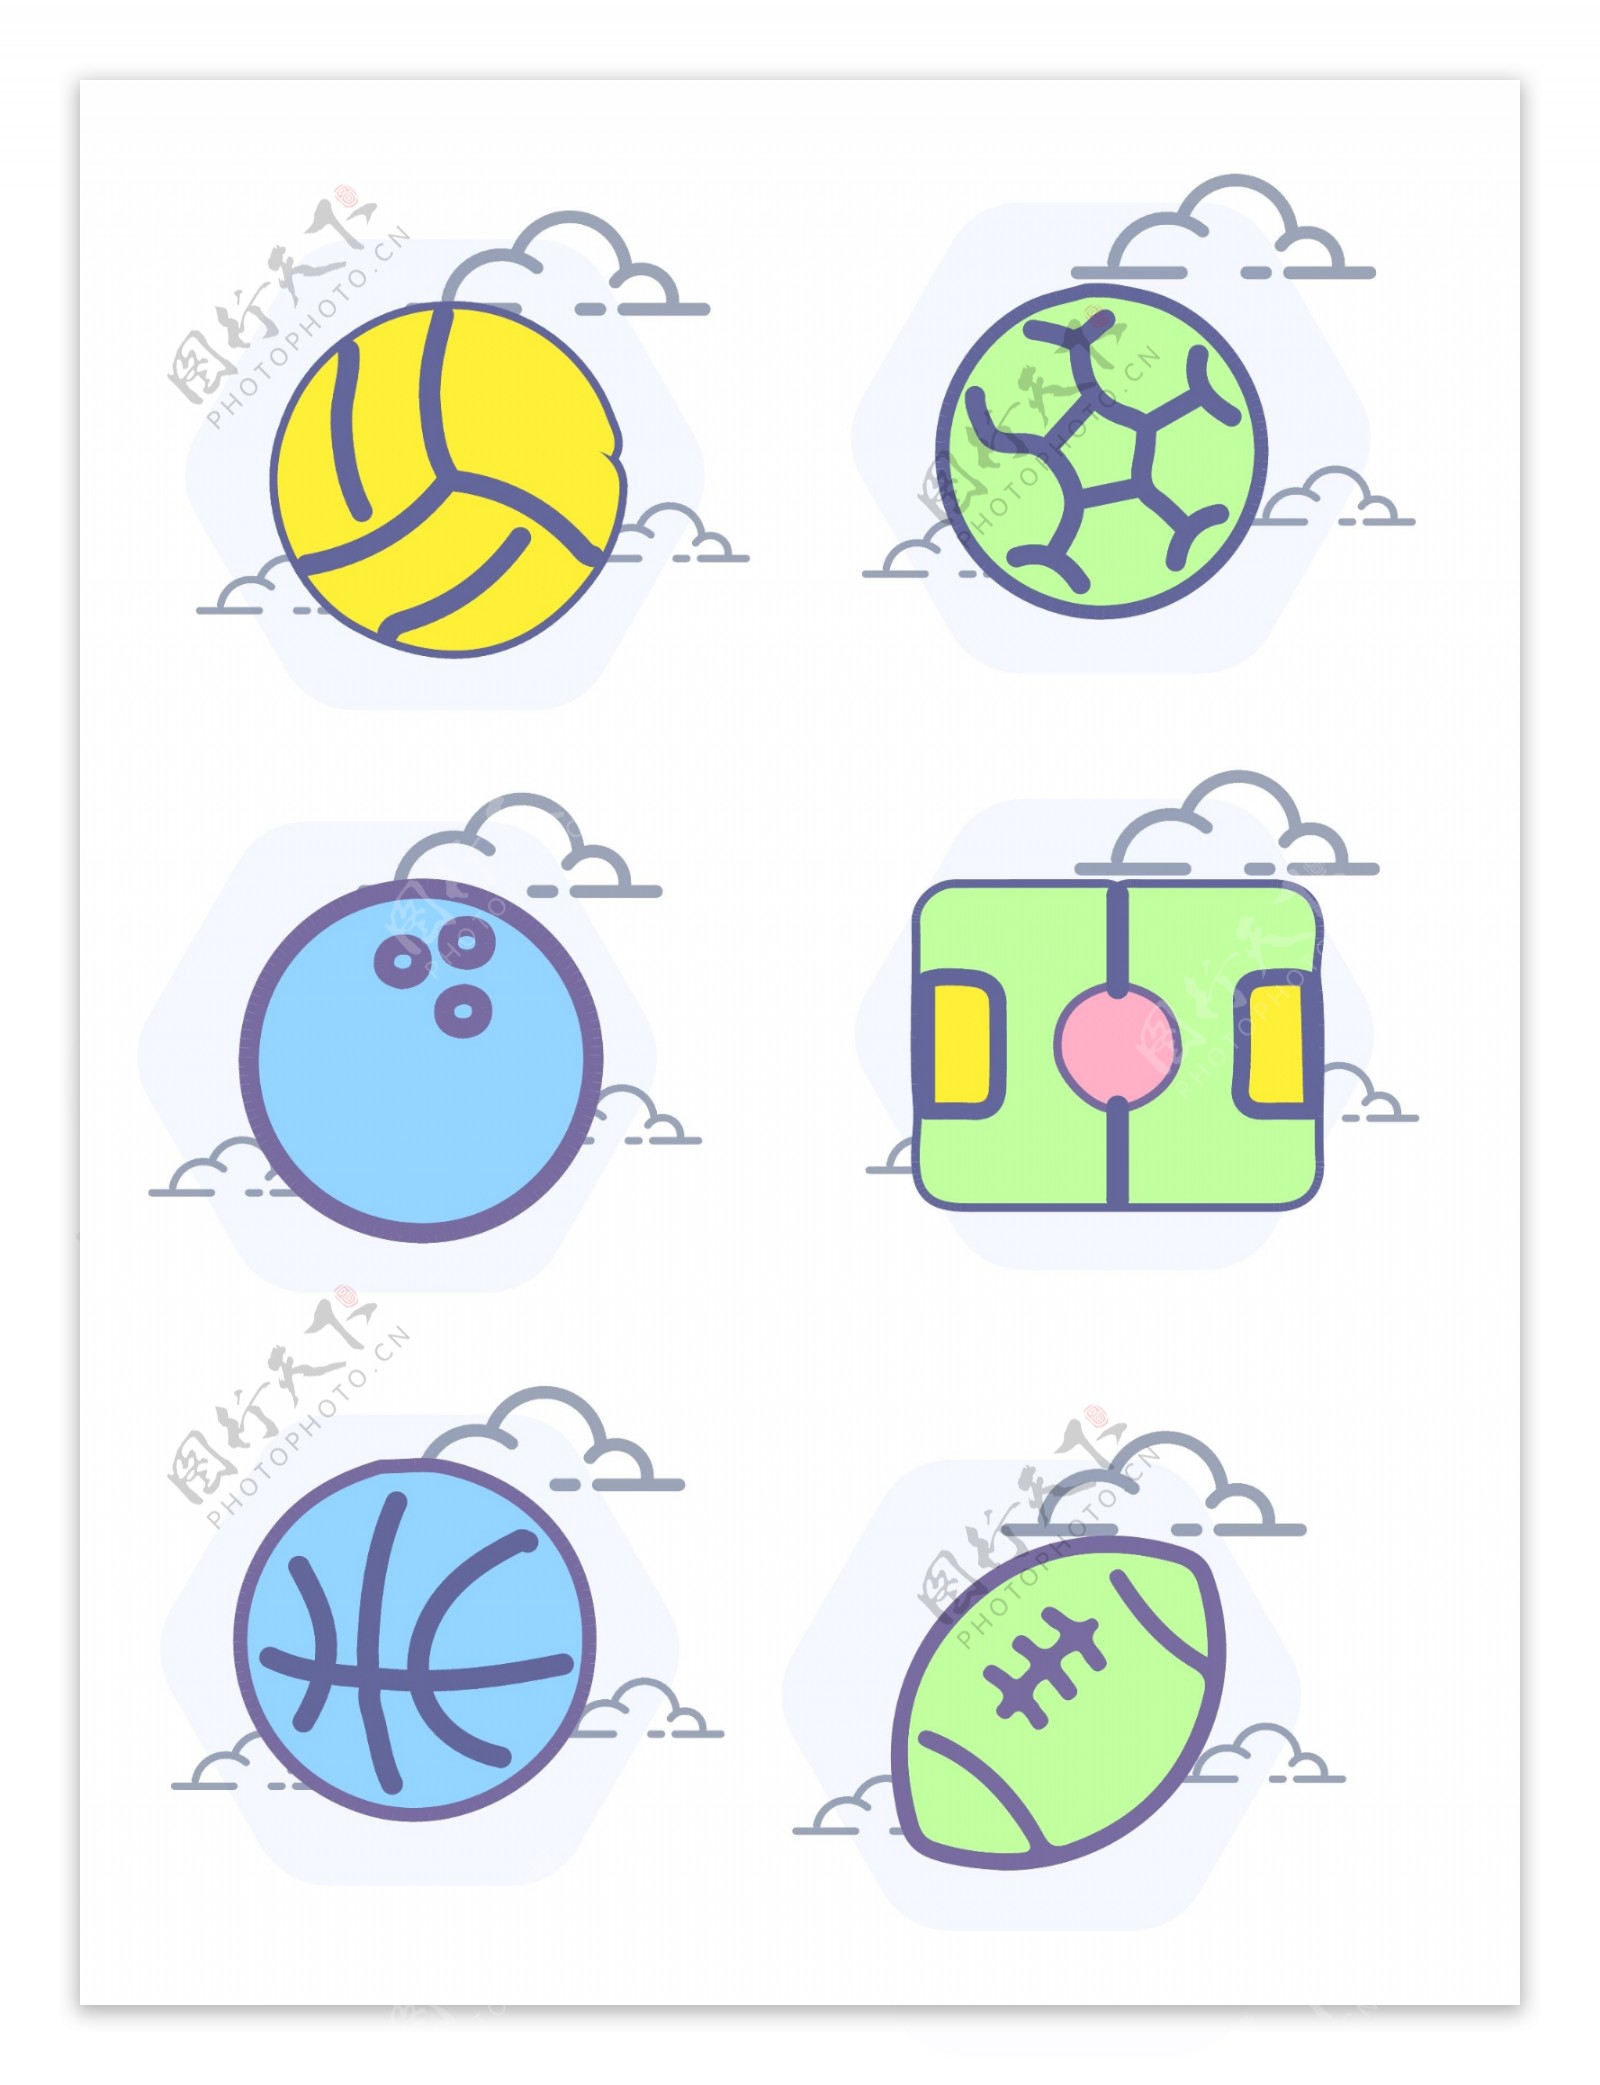 球类体育图标元素几何圆形